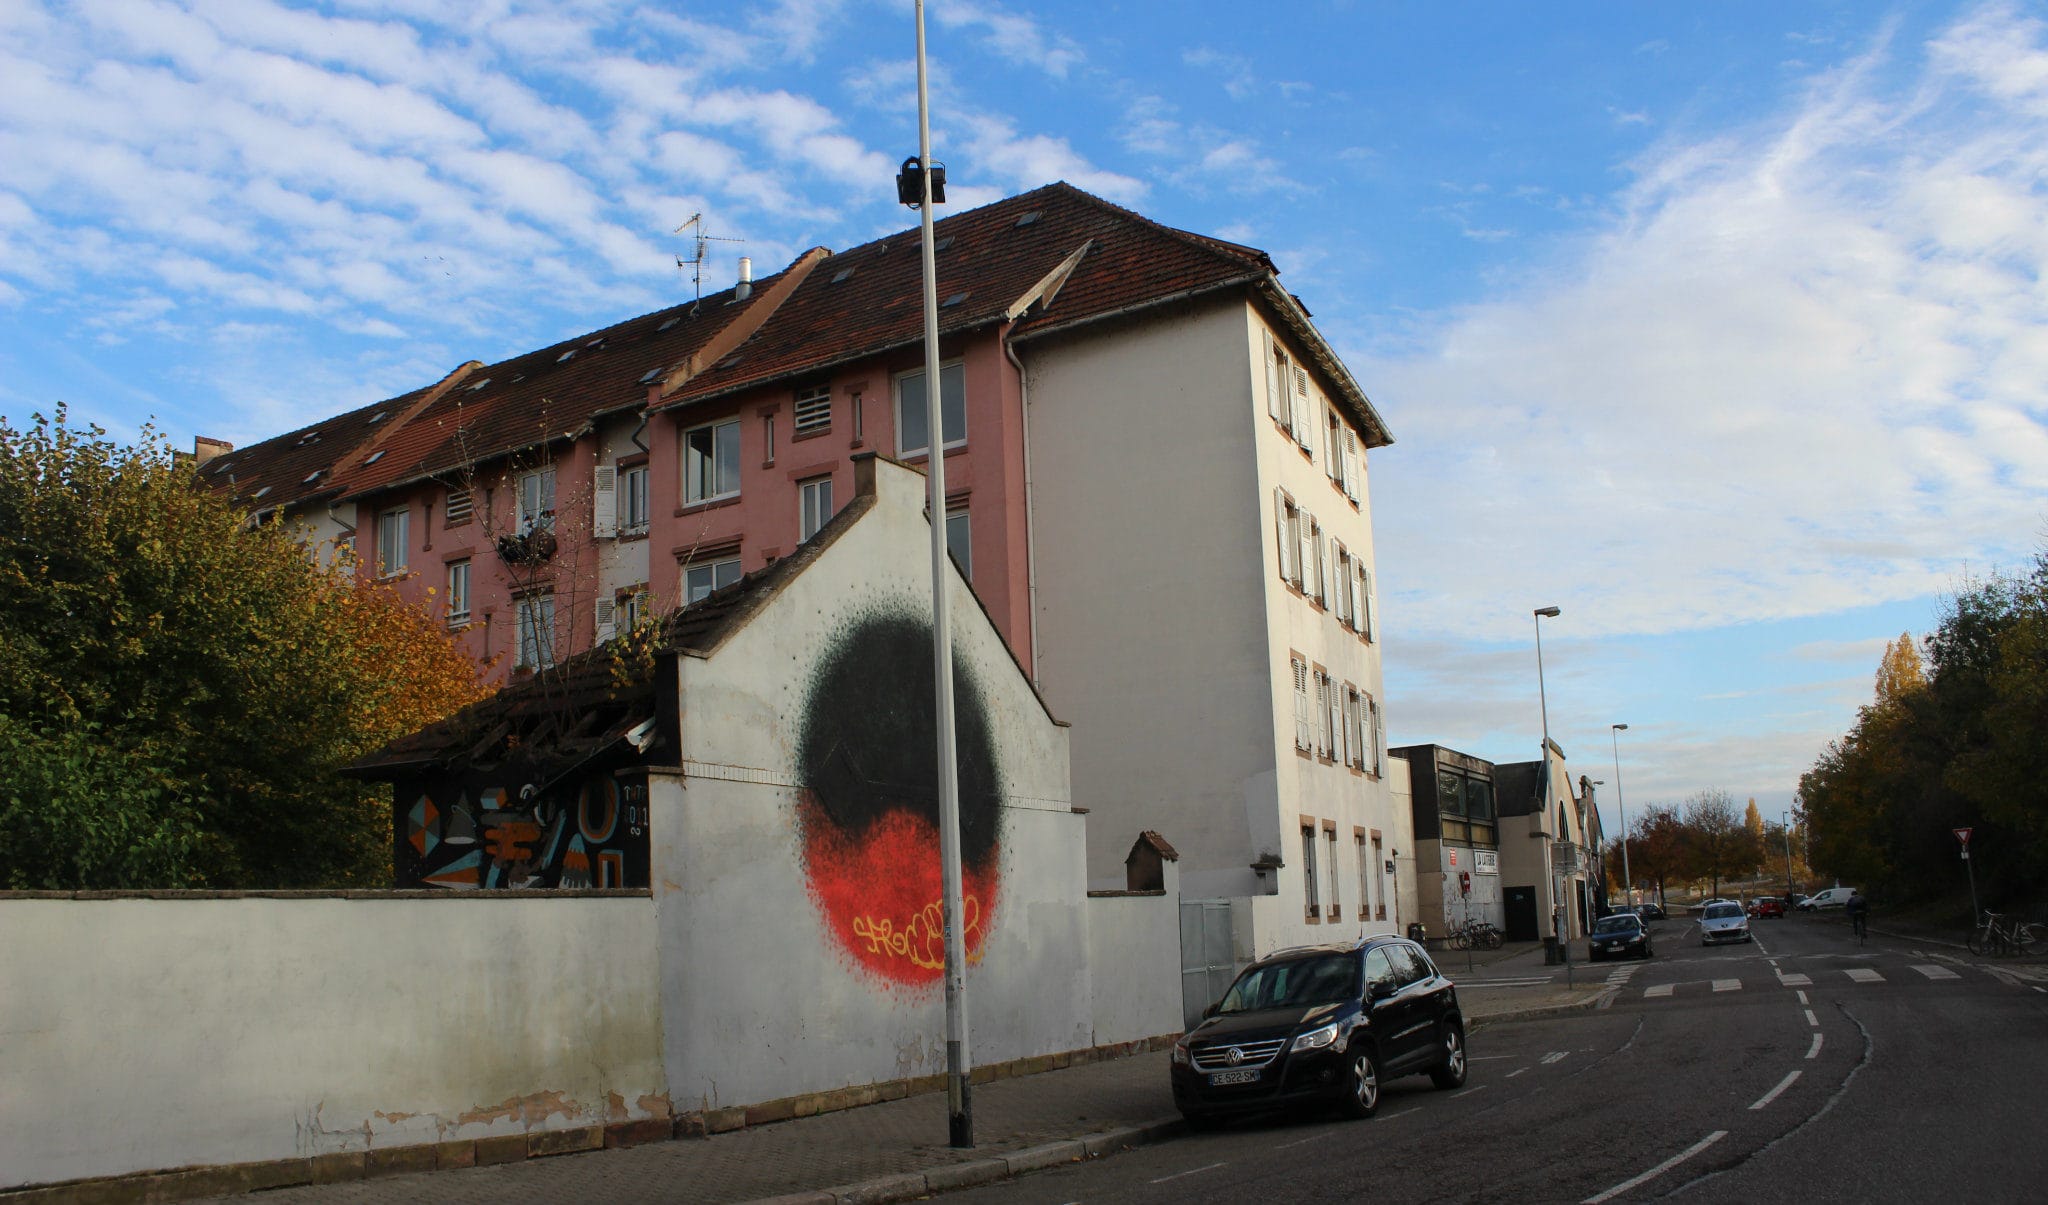 Le maintien ou non de cette barre d'immeubles a peu été discuté, contrairement aux sens de circulation. (photo JFG / Rue89 Strasbourg)